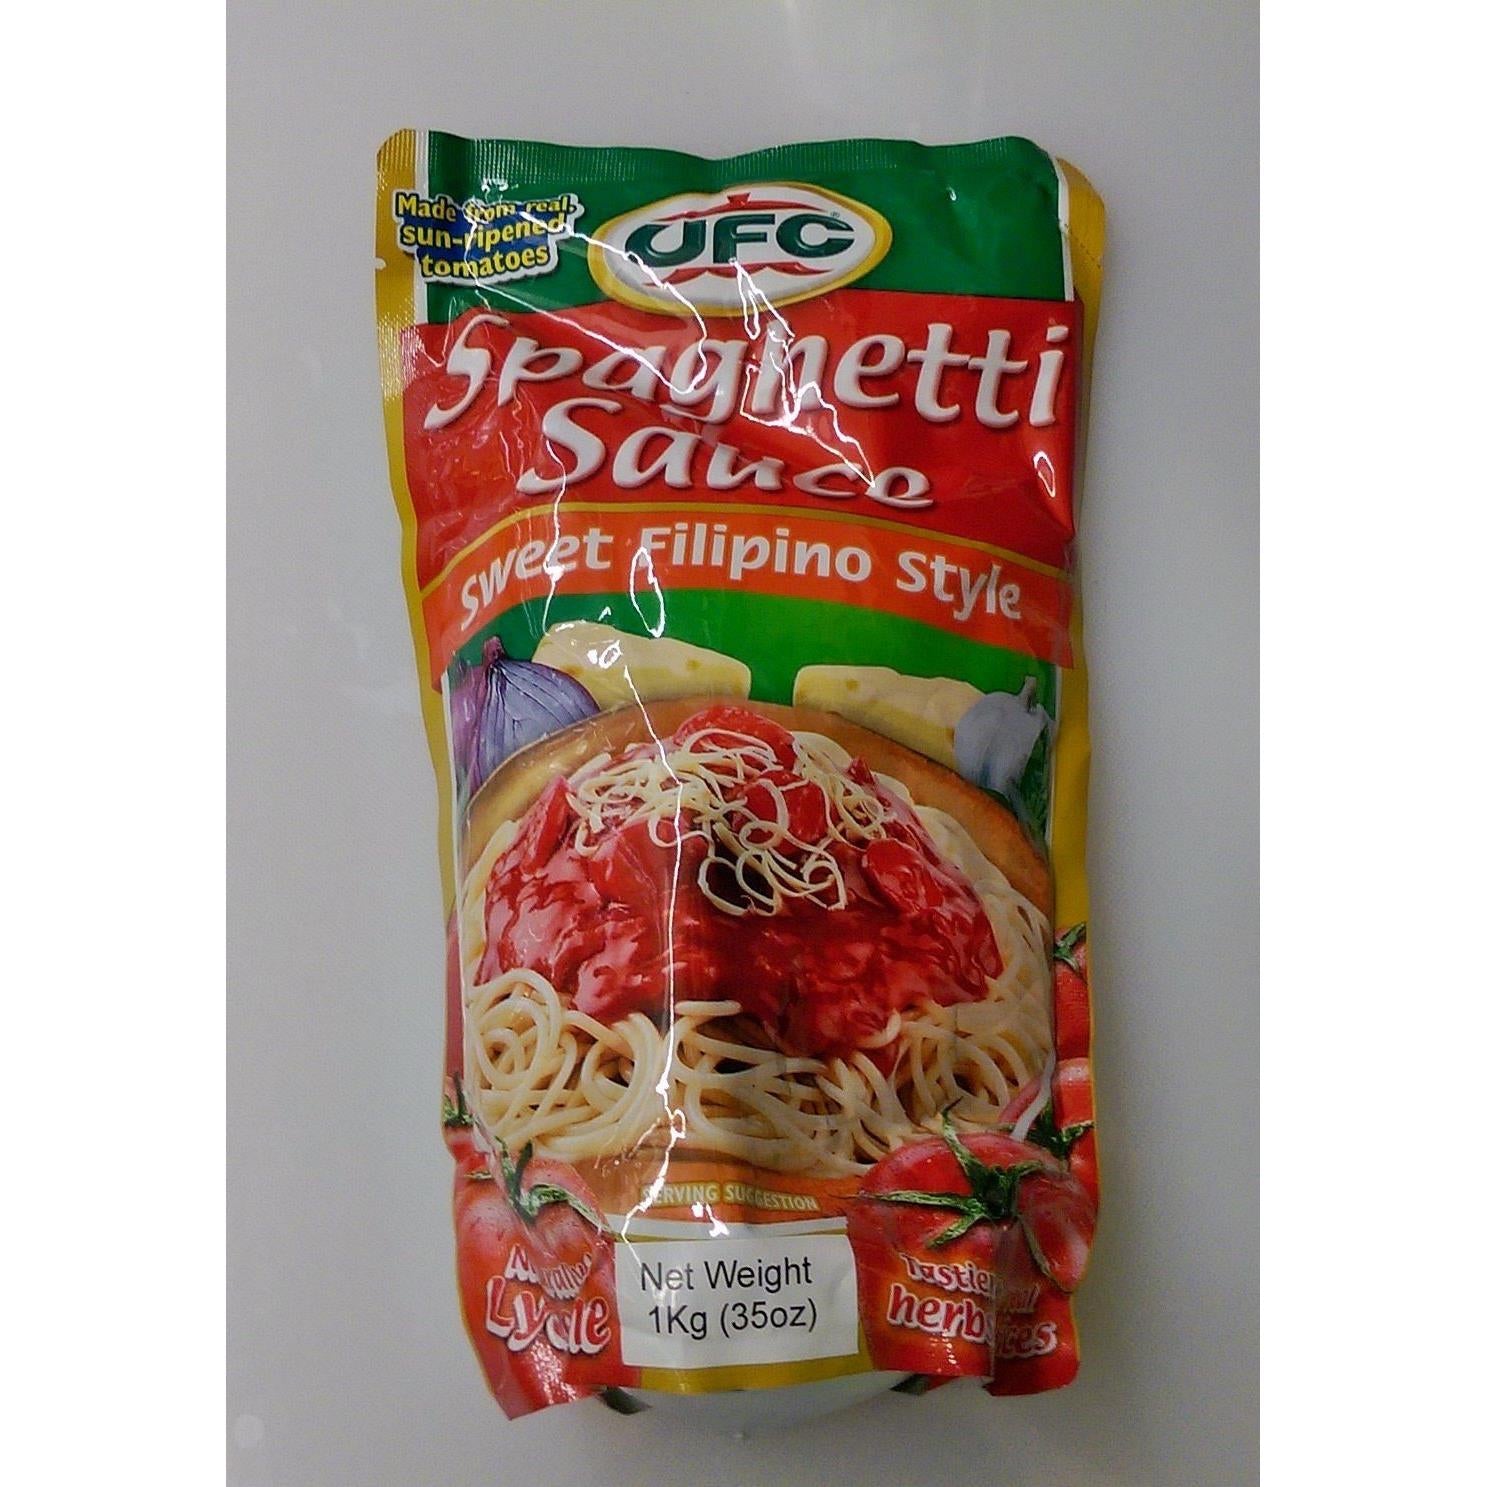 Ufc Spaghetti Sauce Sweet Filipino Style